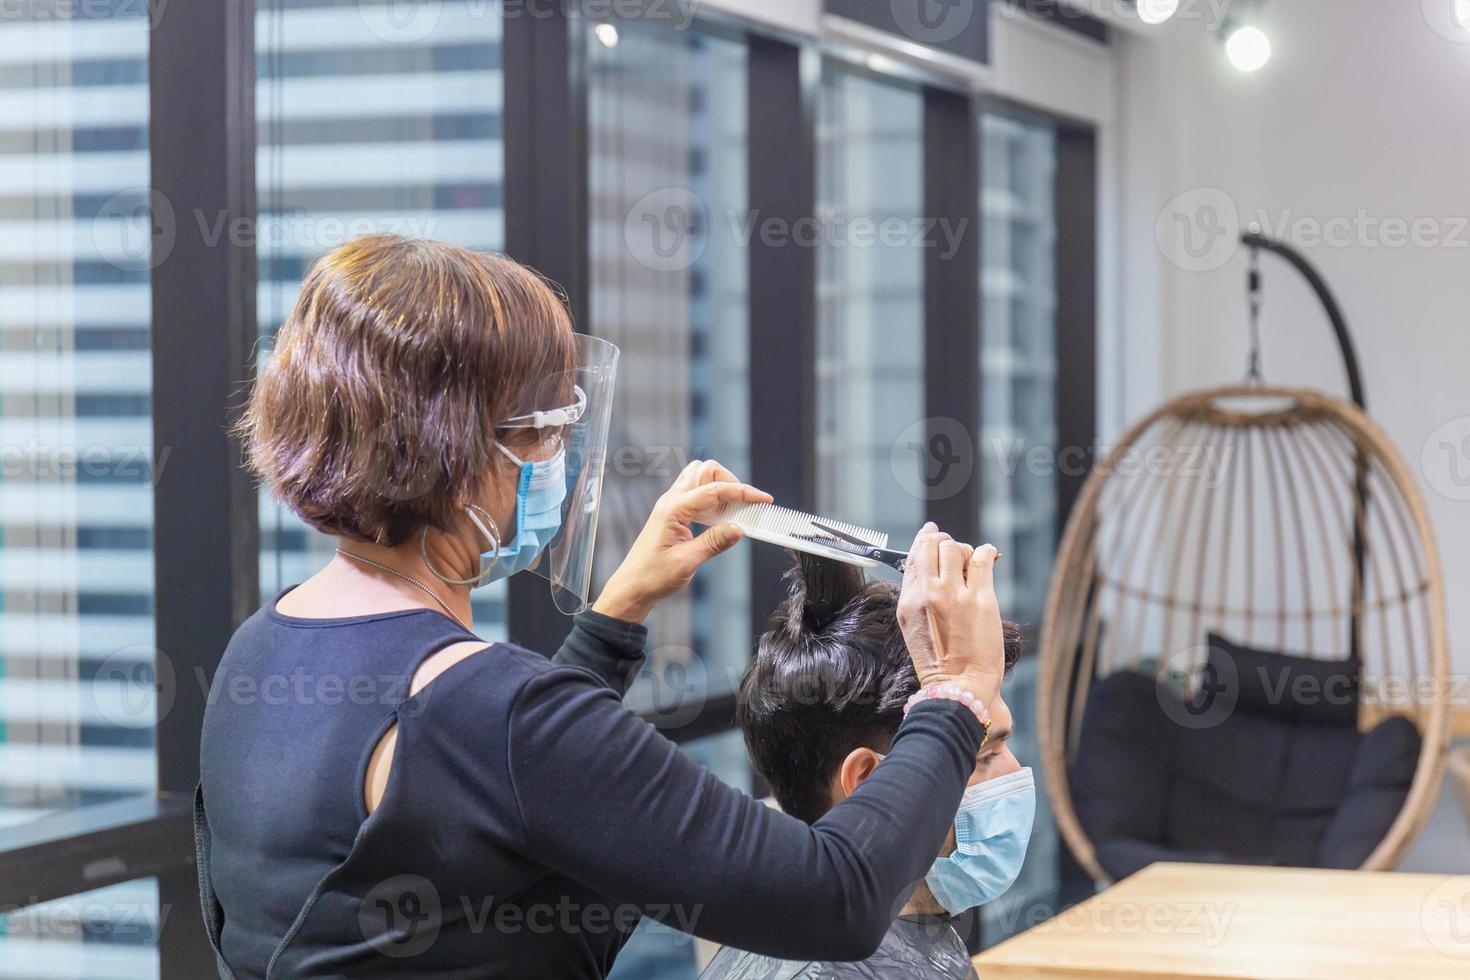 peluquera cortando el cabello del cliente con tijeras y peine, peluquera y cliente usando máscara protectora debido a la pandemia del coronavirus, nuevos conceptos normales foto